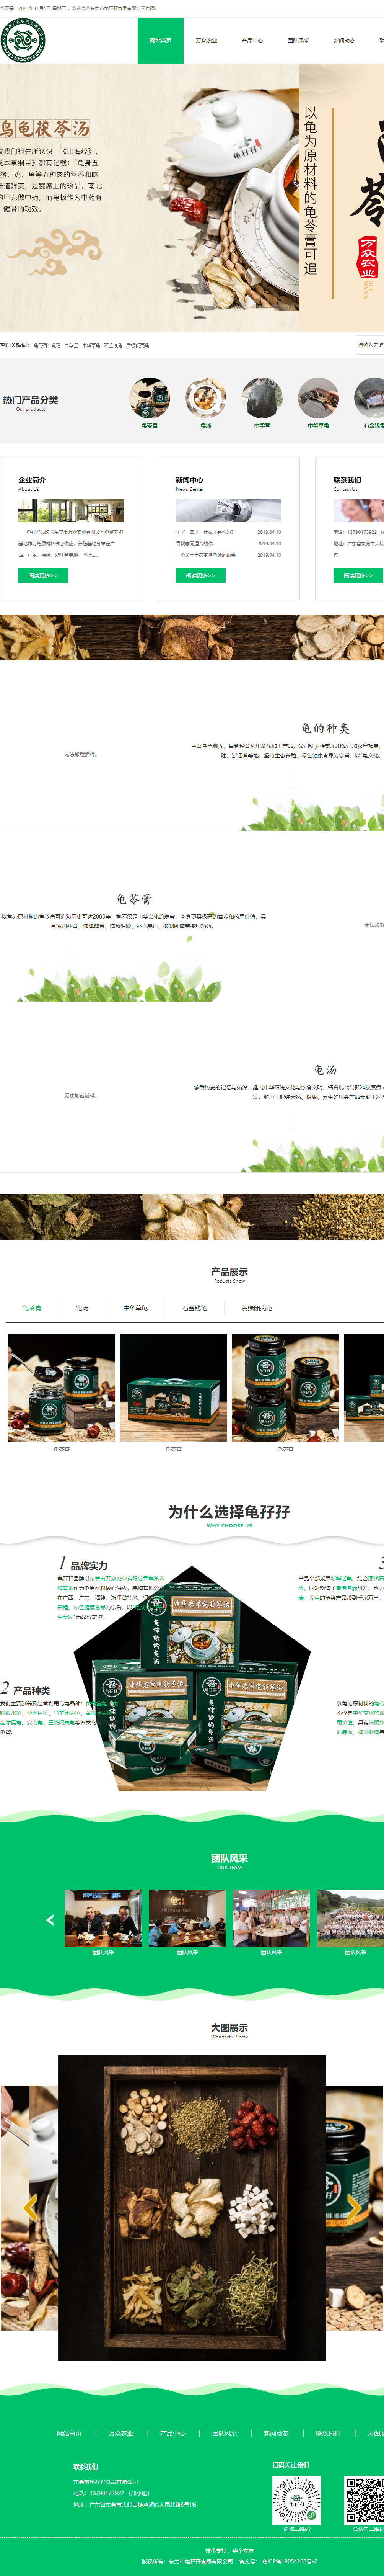 东莞市龟巴巴食品有限公司网站案例